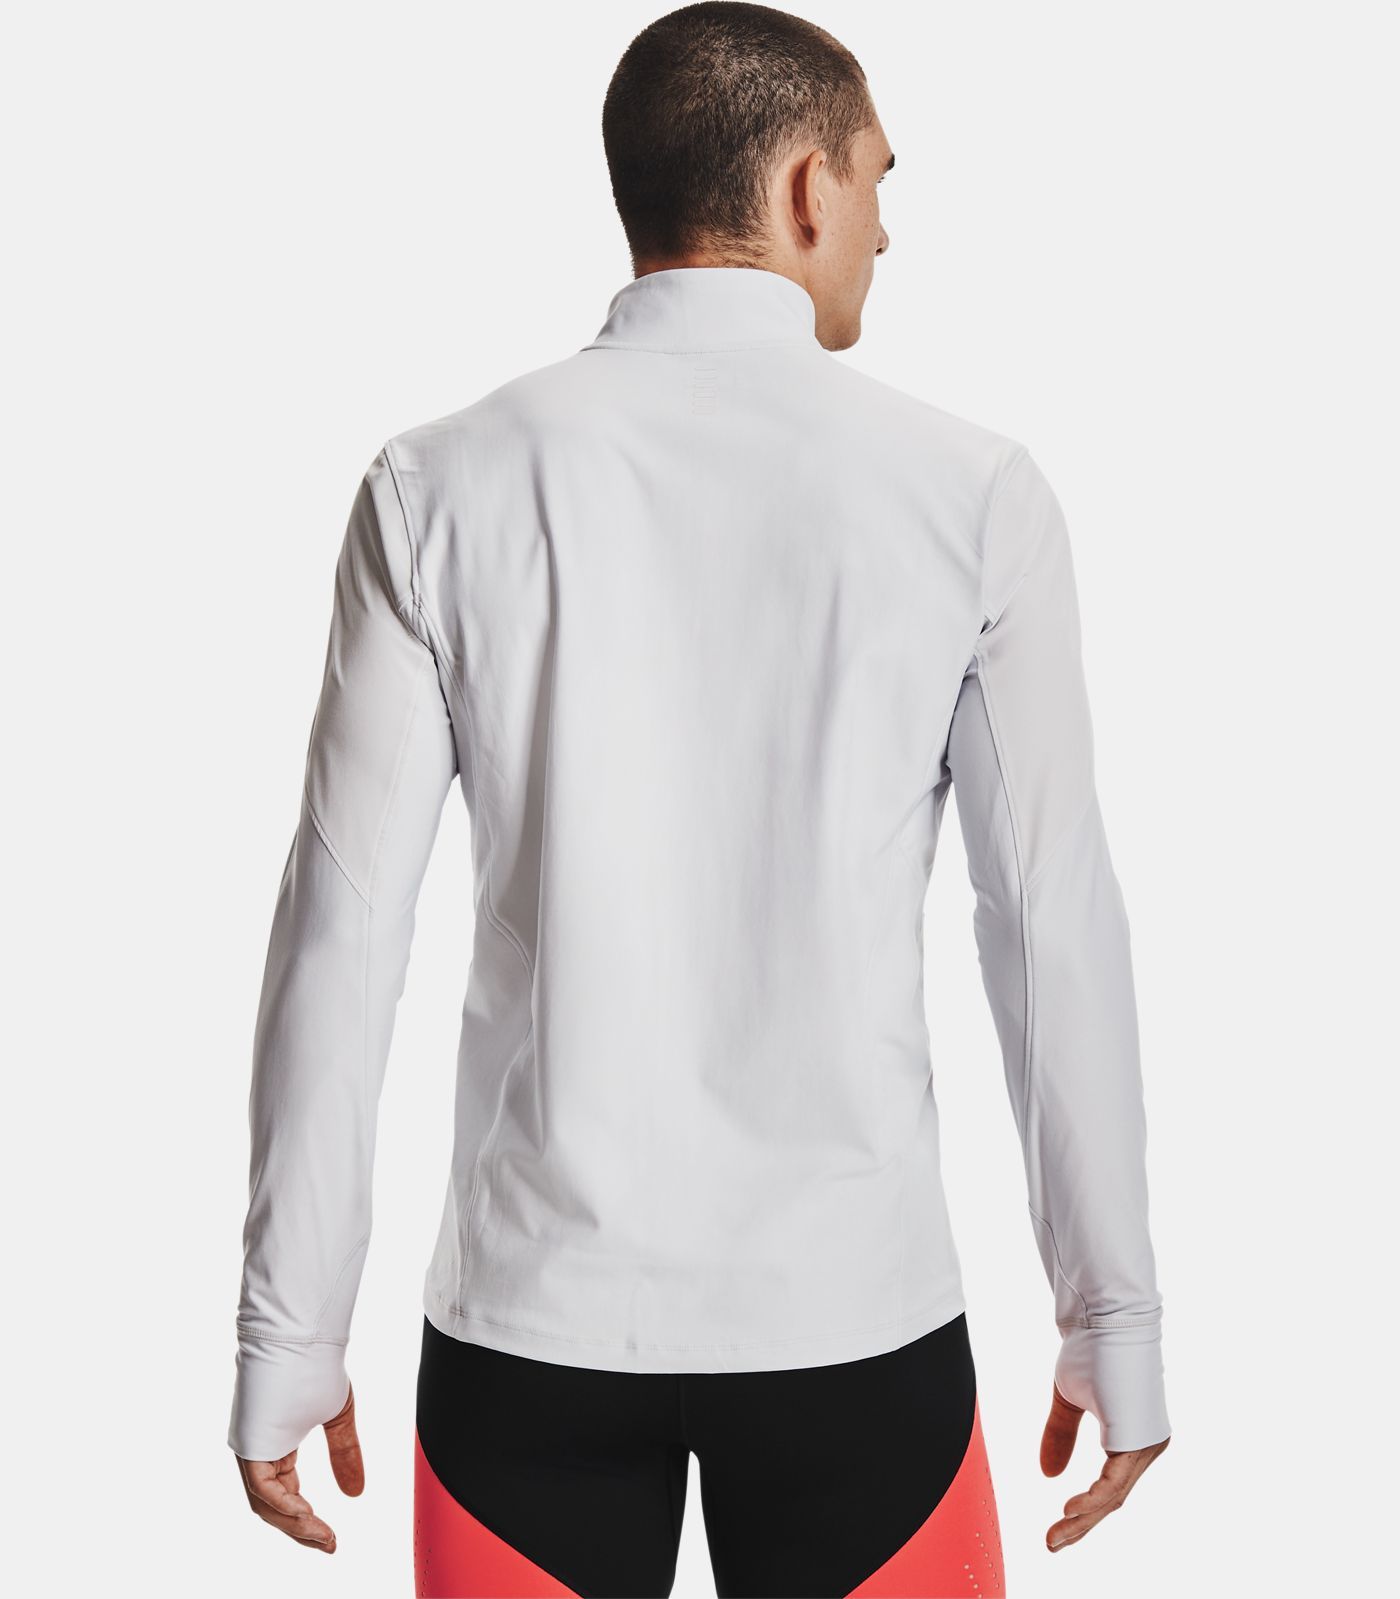 Under Armour Qualifier Half Zip Mod Gray Men's Sweatshirt